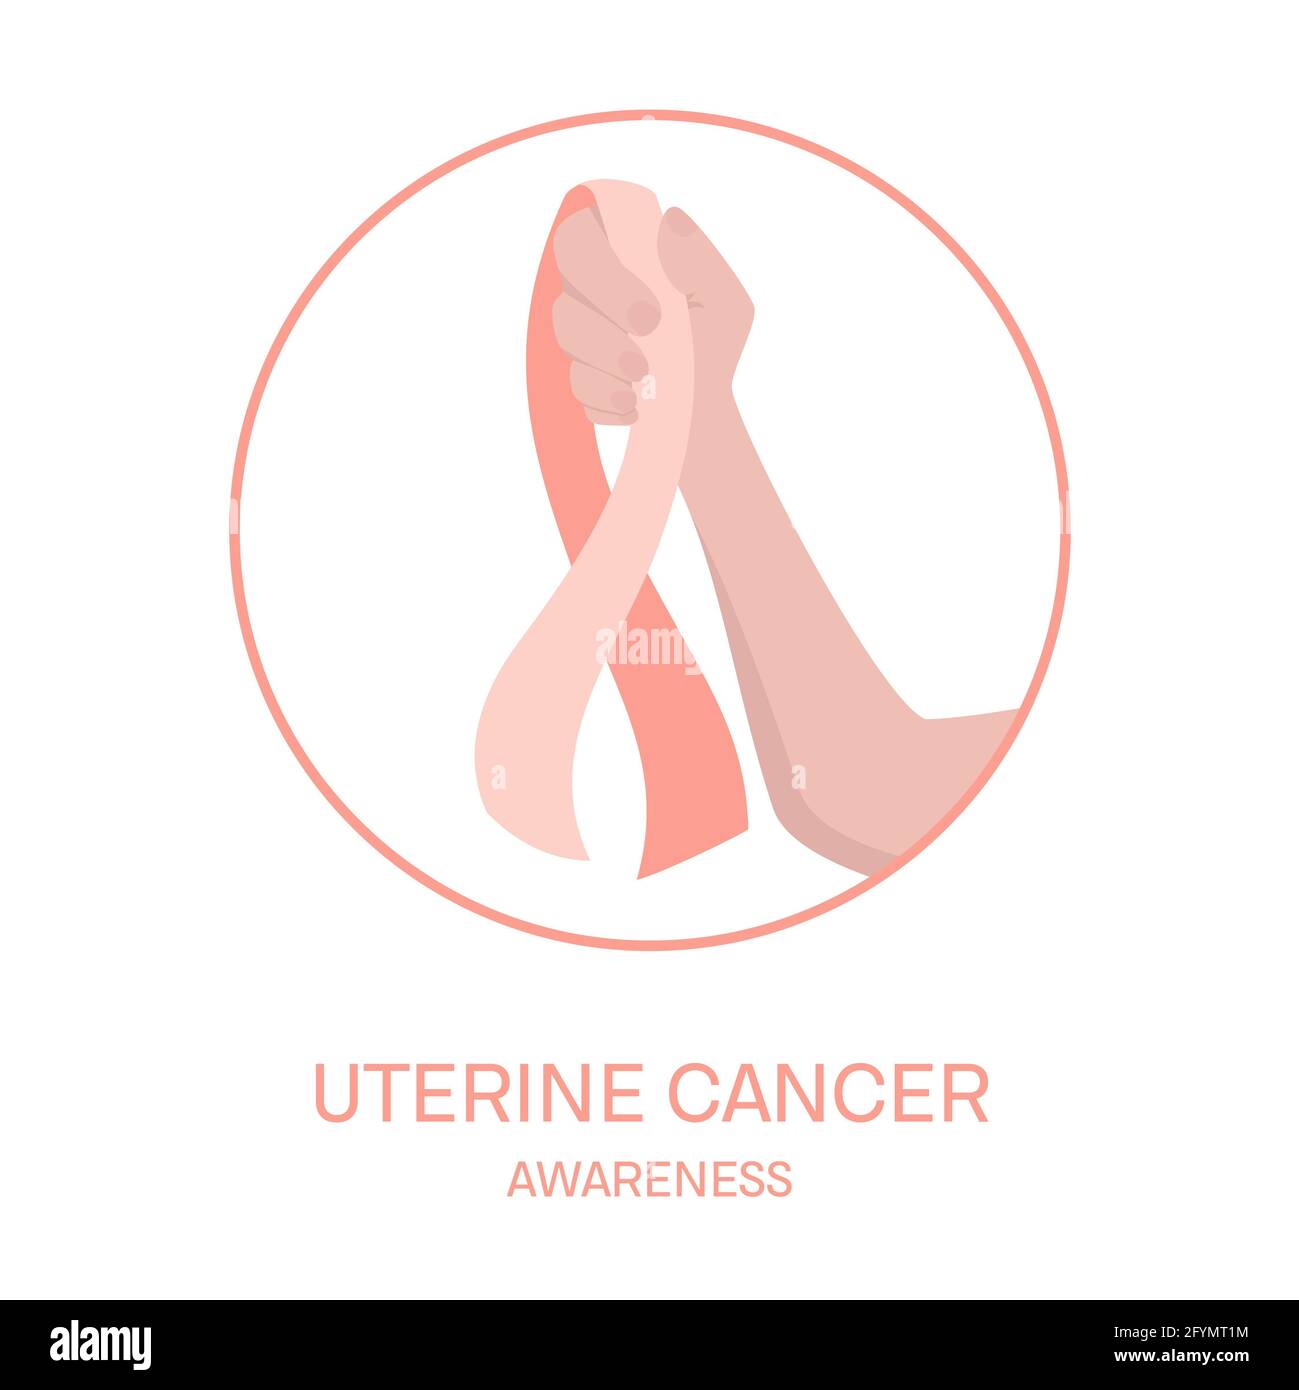 Cancer de l'utérus, illustration conceptuelle Banque D'Images